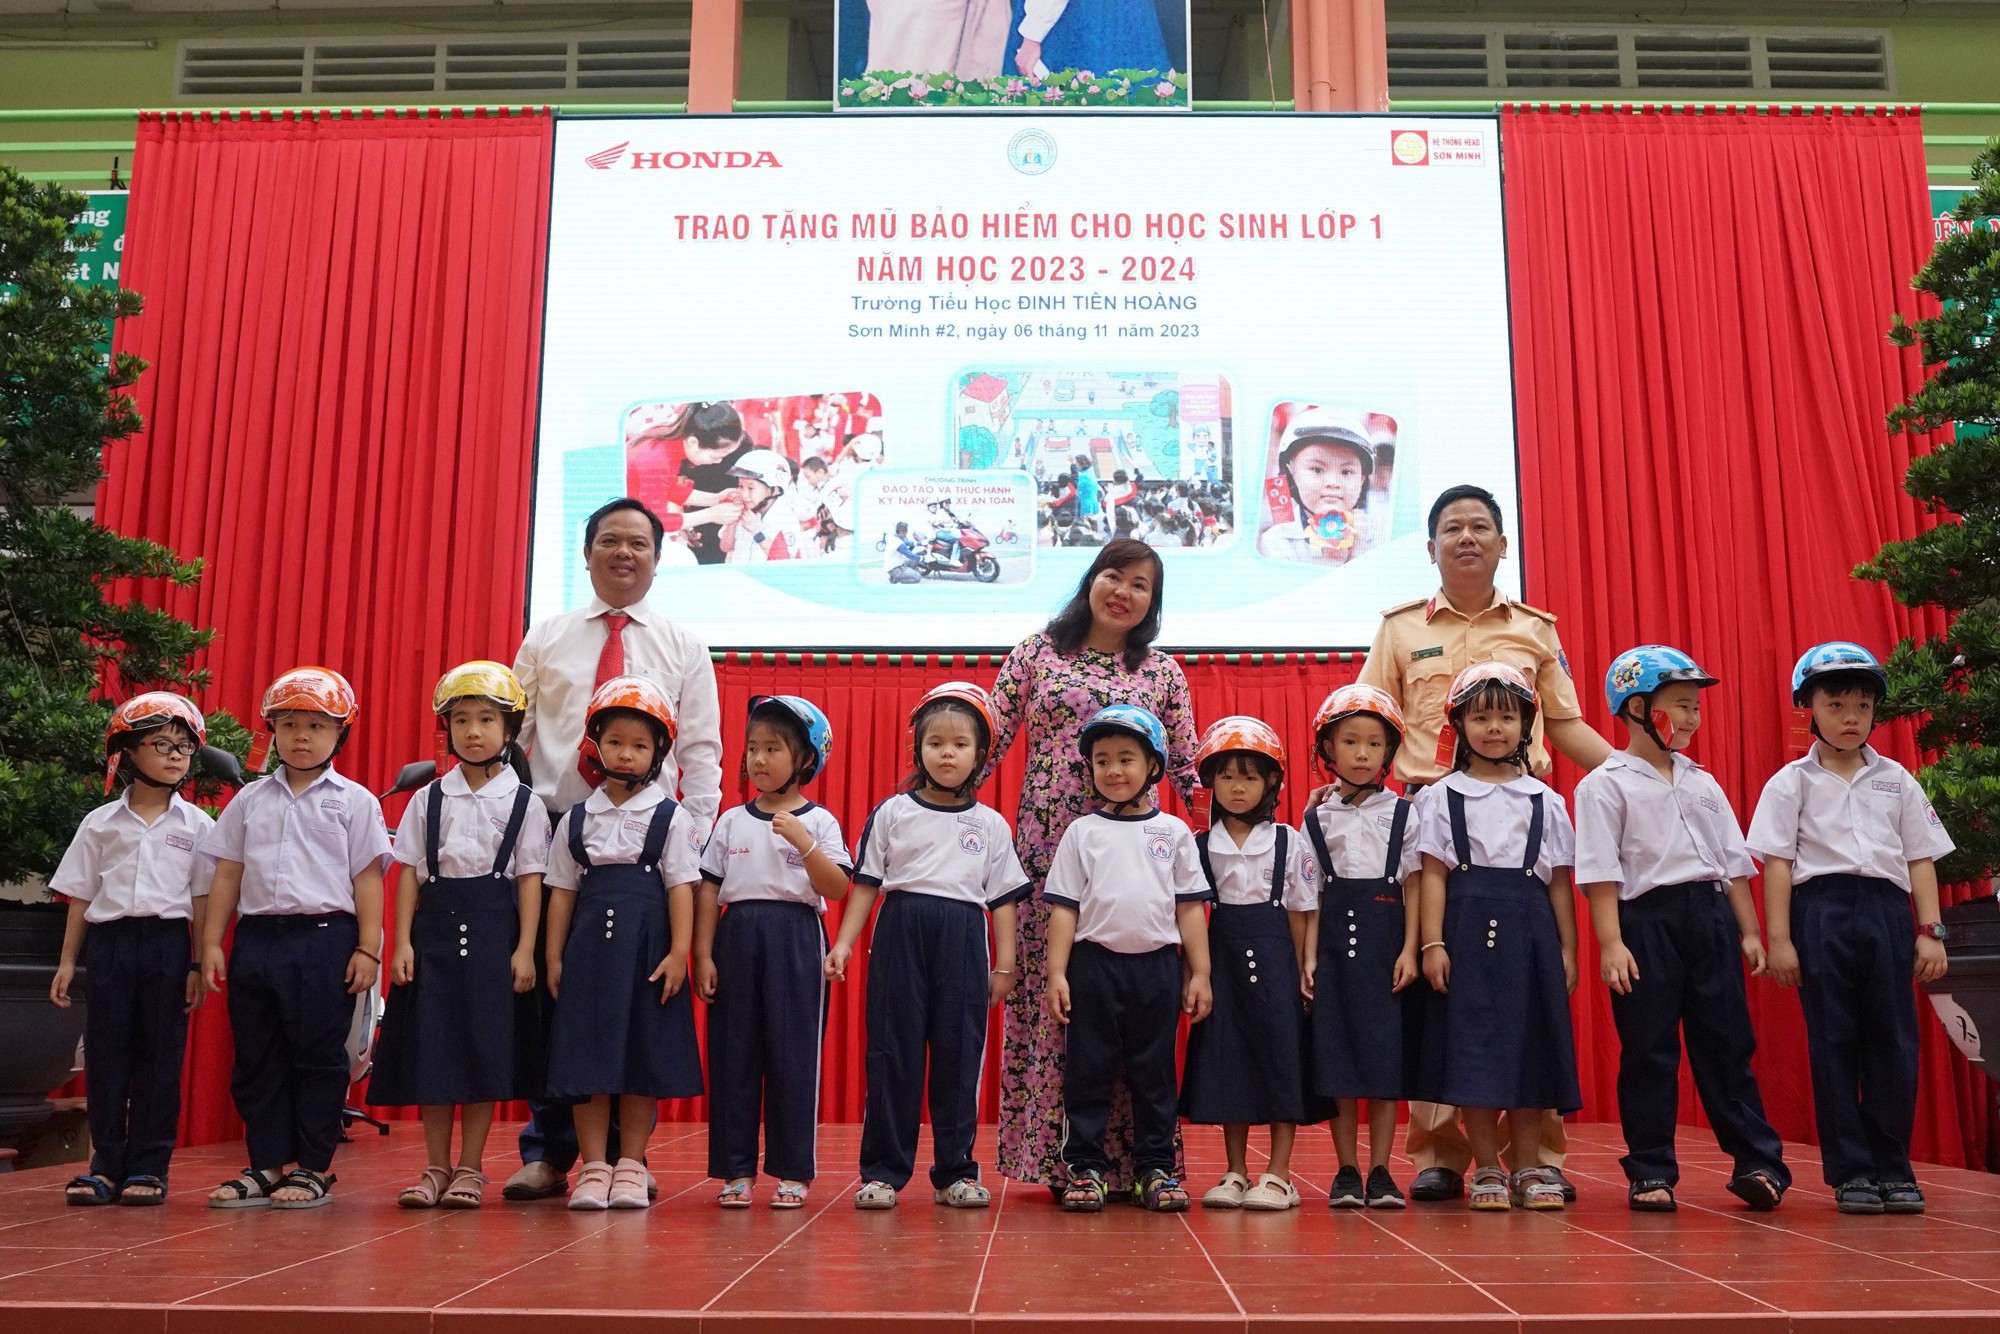 HEAD Sơn Minh trao mũ bảo hiểm cho học sinh trường tiểu học Đinh Tiên Hoàng - Ảnh 2.